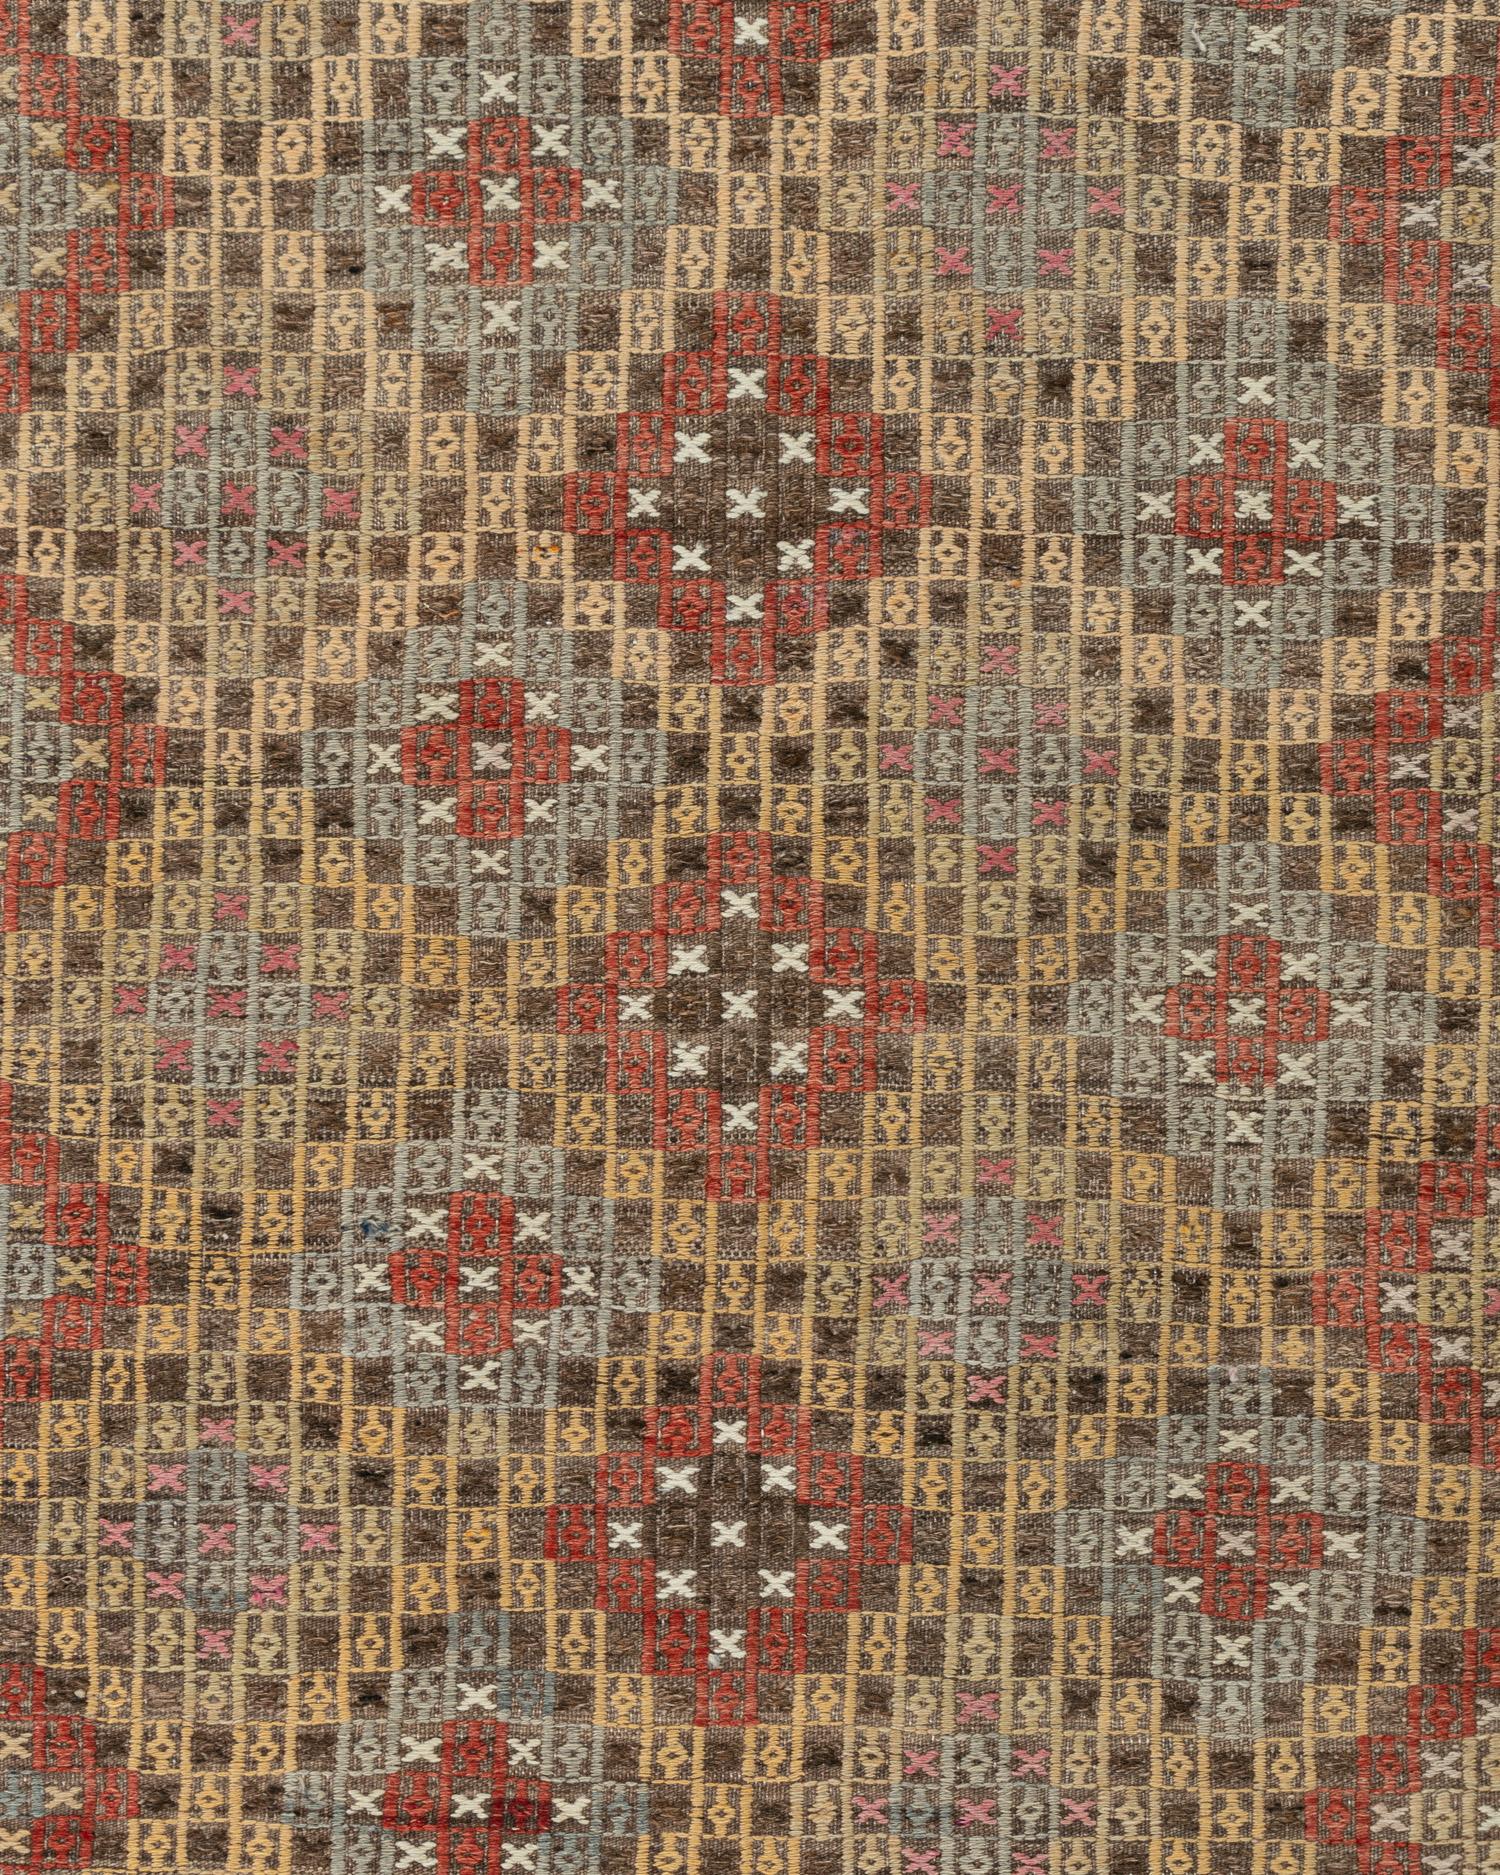 Vintage By By Jajim flatweave area rug 5'2 X 9'7. La technique Jajim (cecim) est utilisée en Turquie, en Perse et dans le Caucase. Elle consiste en un tissage simple (chaînes et trames égales) avec un motif de trame ajouté (supplémentaire). Les